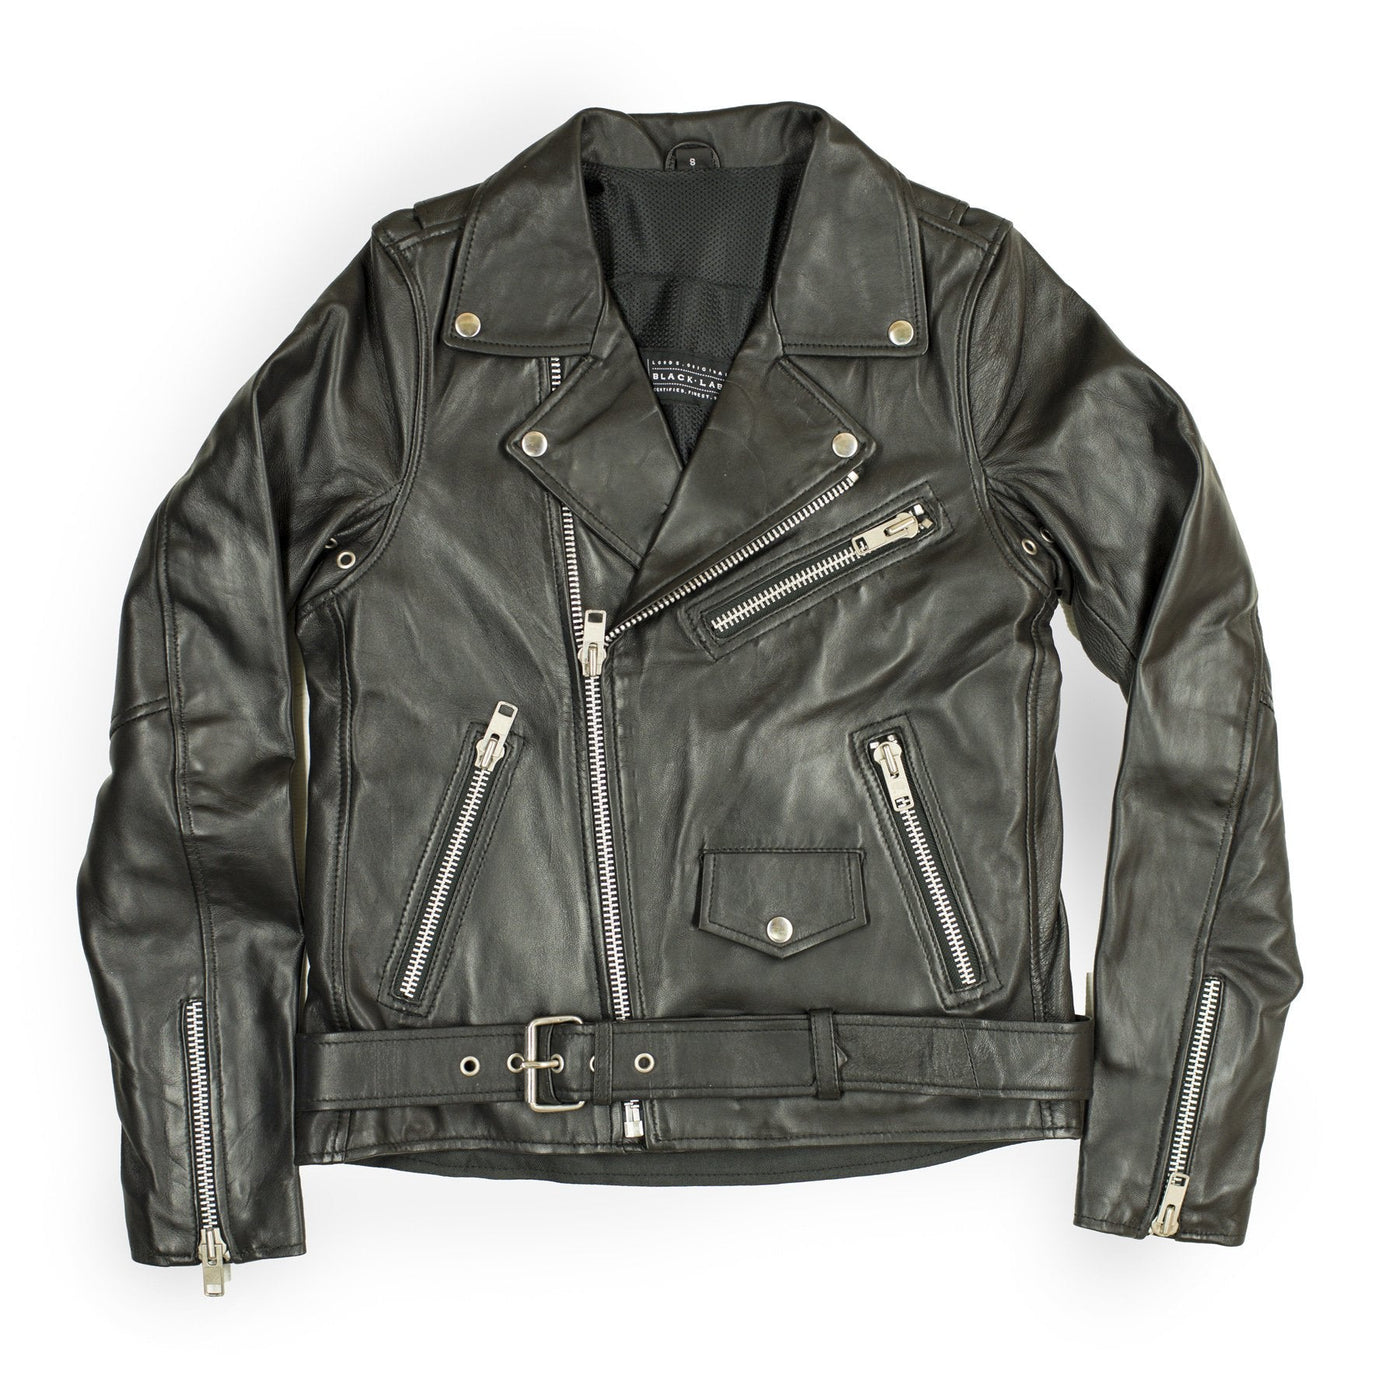 Mary J Women's Leather Jacket